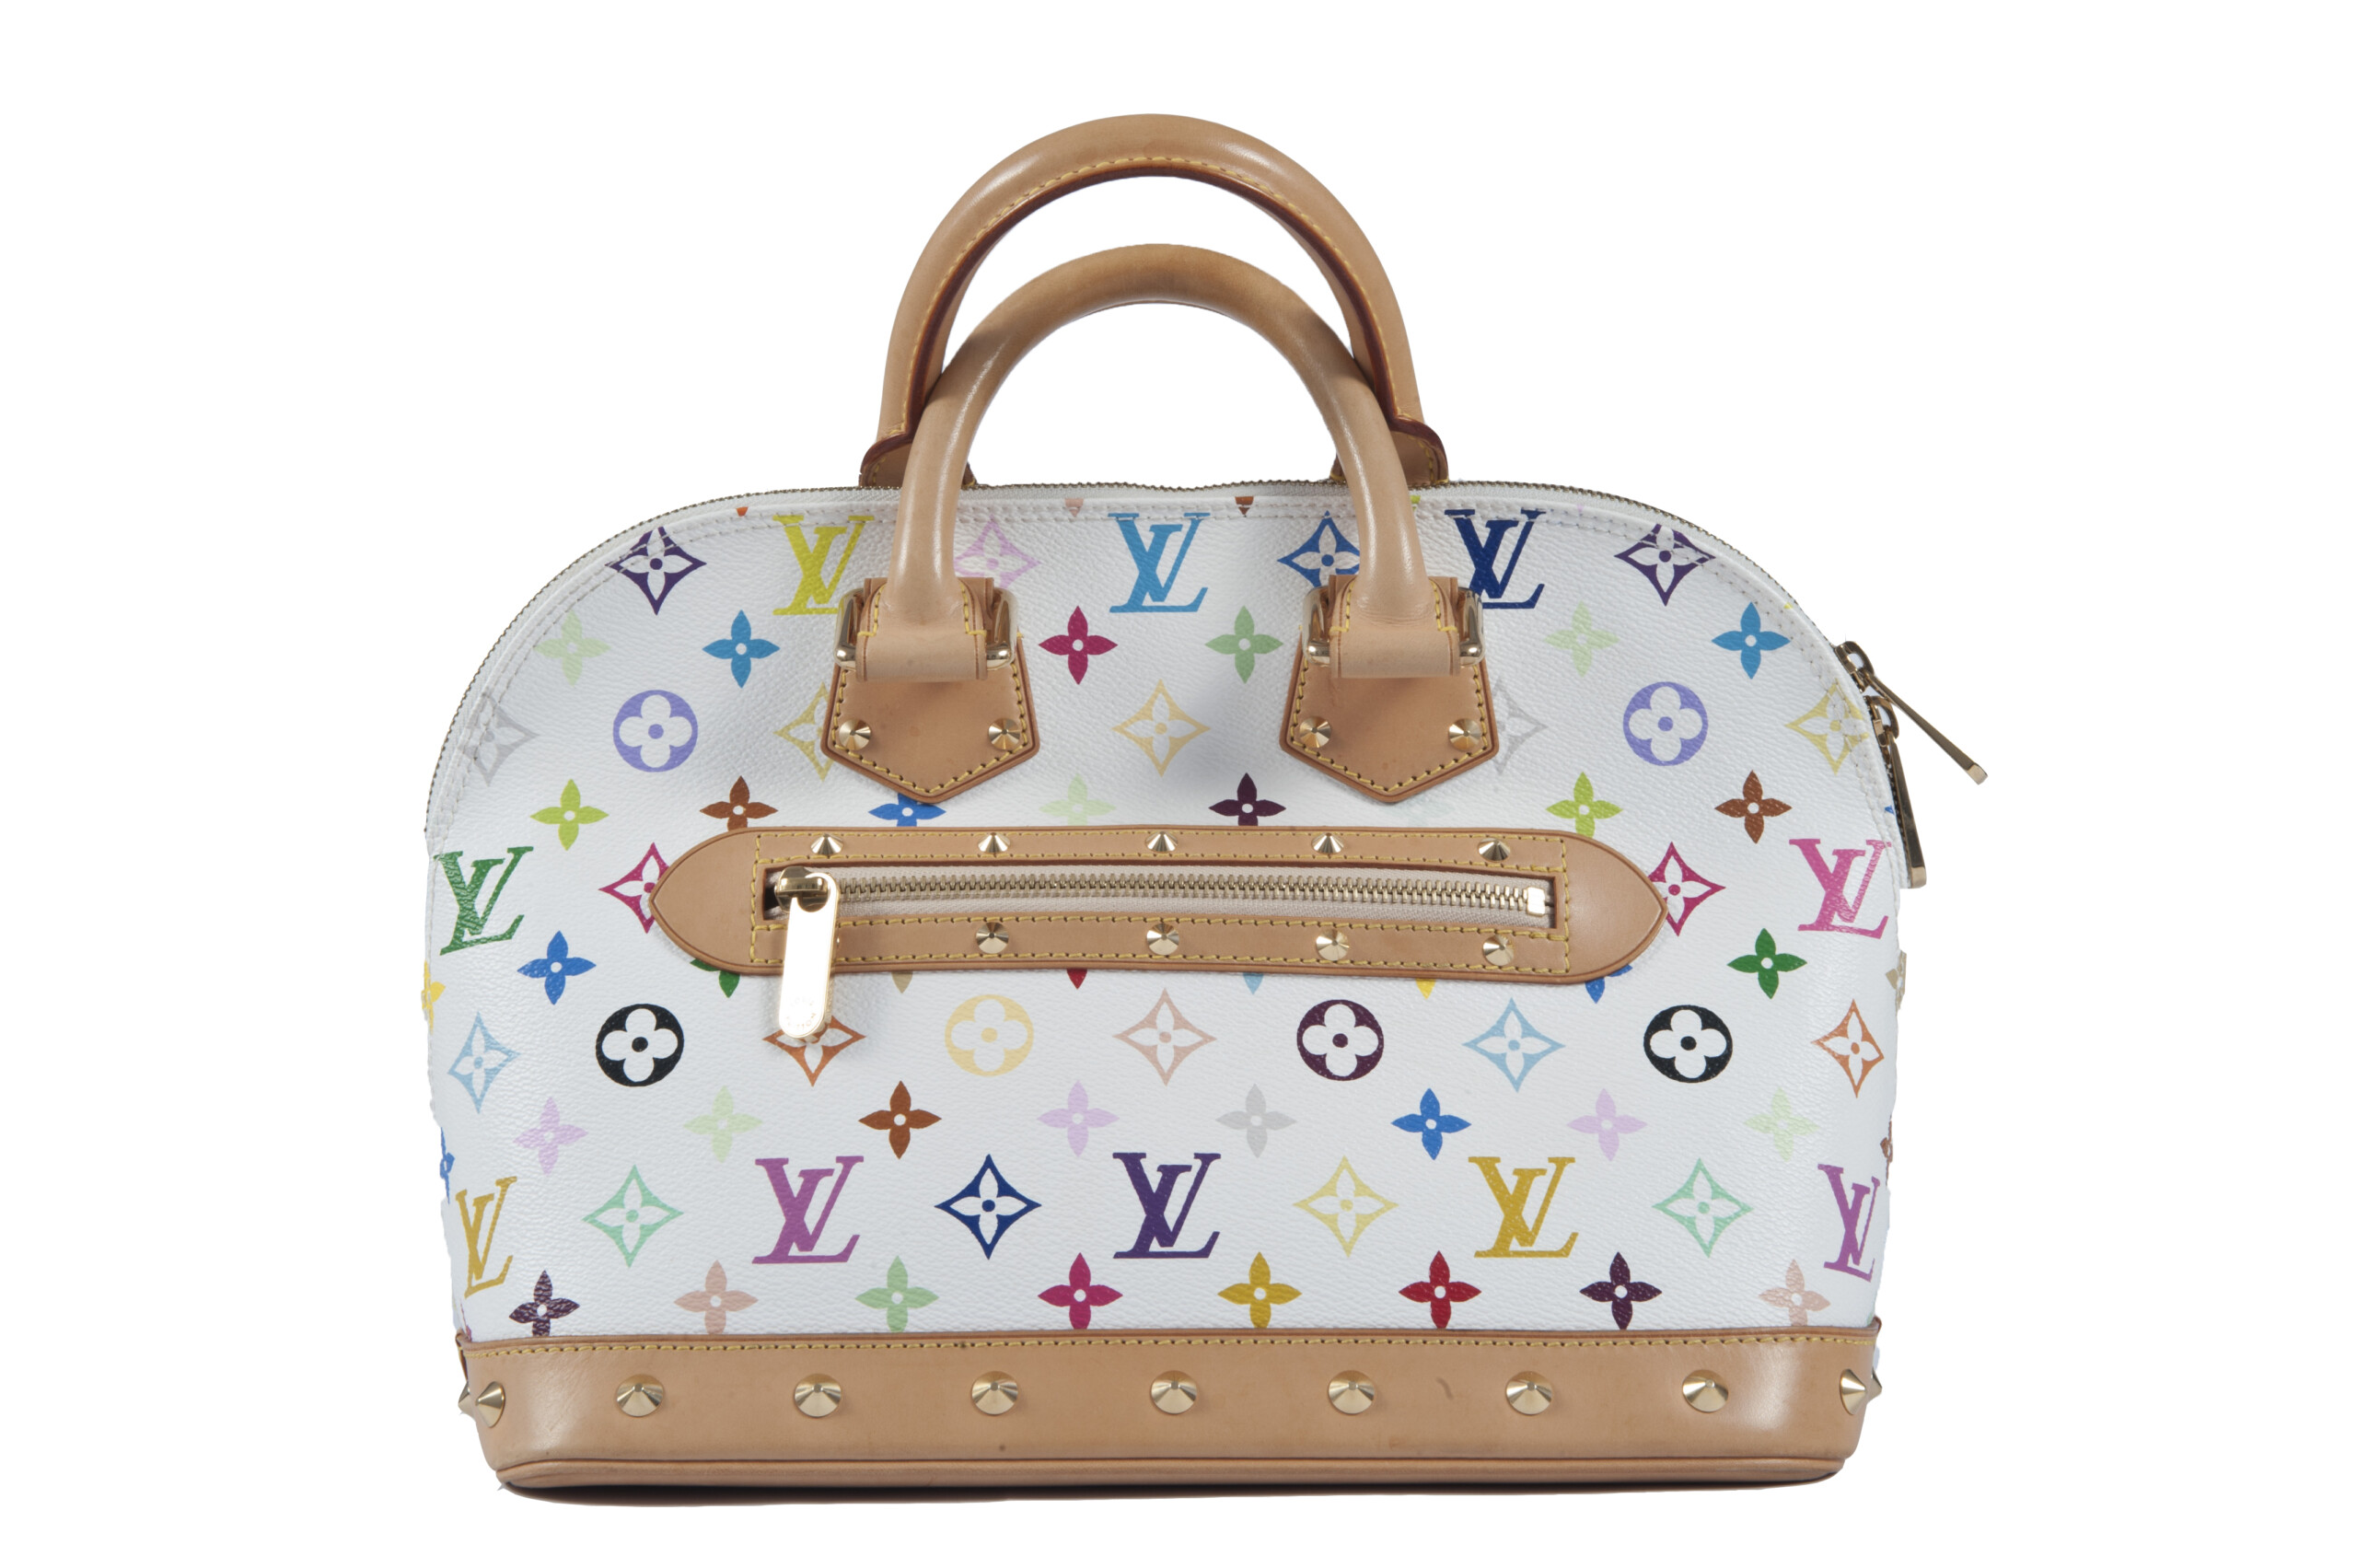 Louis Vuitton Alma ”Murakami” handbag